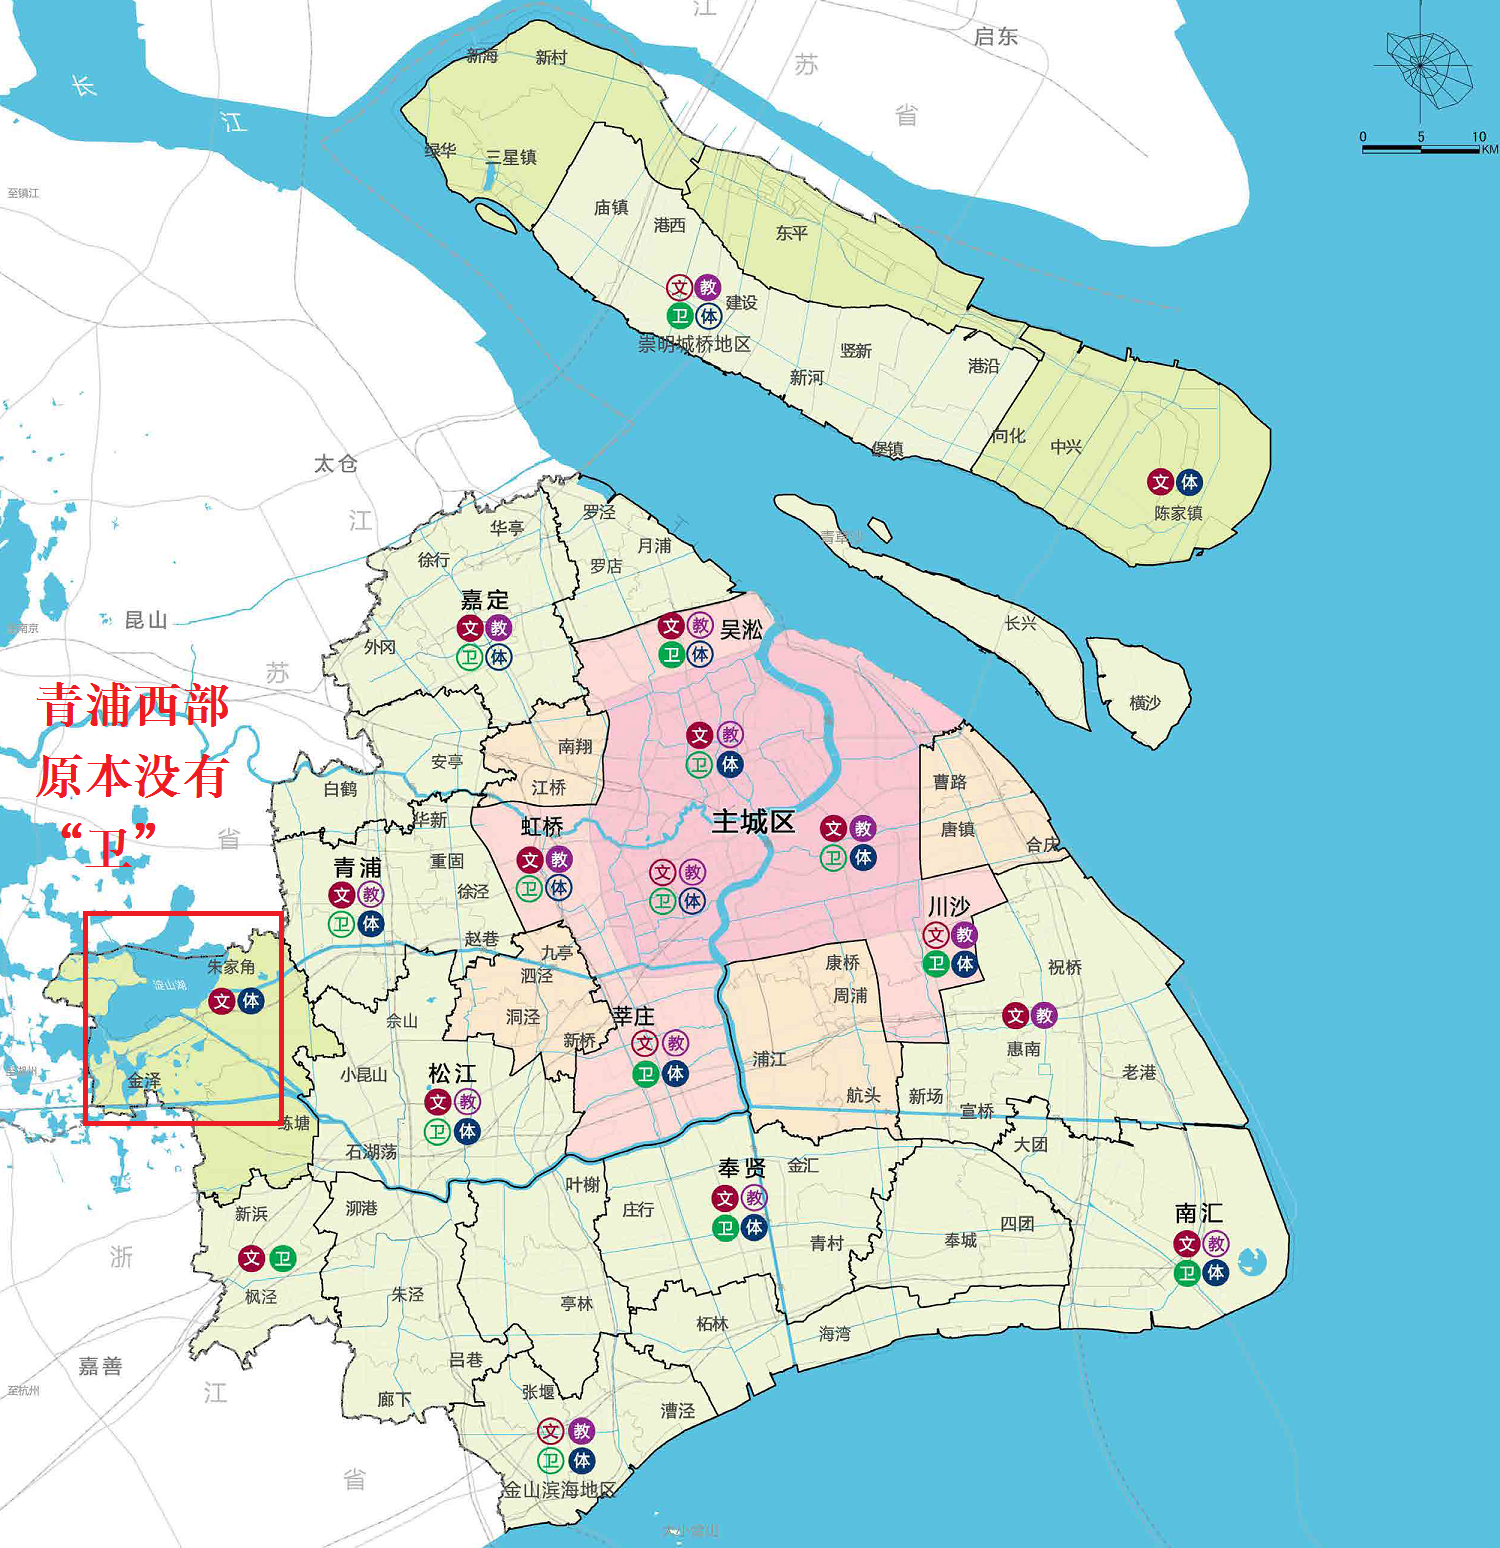 点评青浦区计划落户第一家三甲医院:上海郊区科教文卫依然薄弱